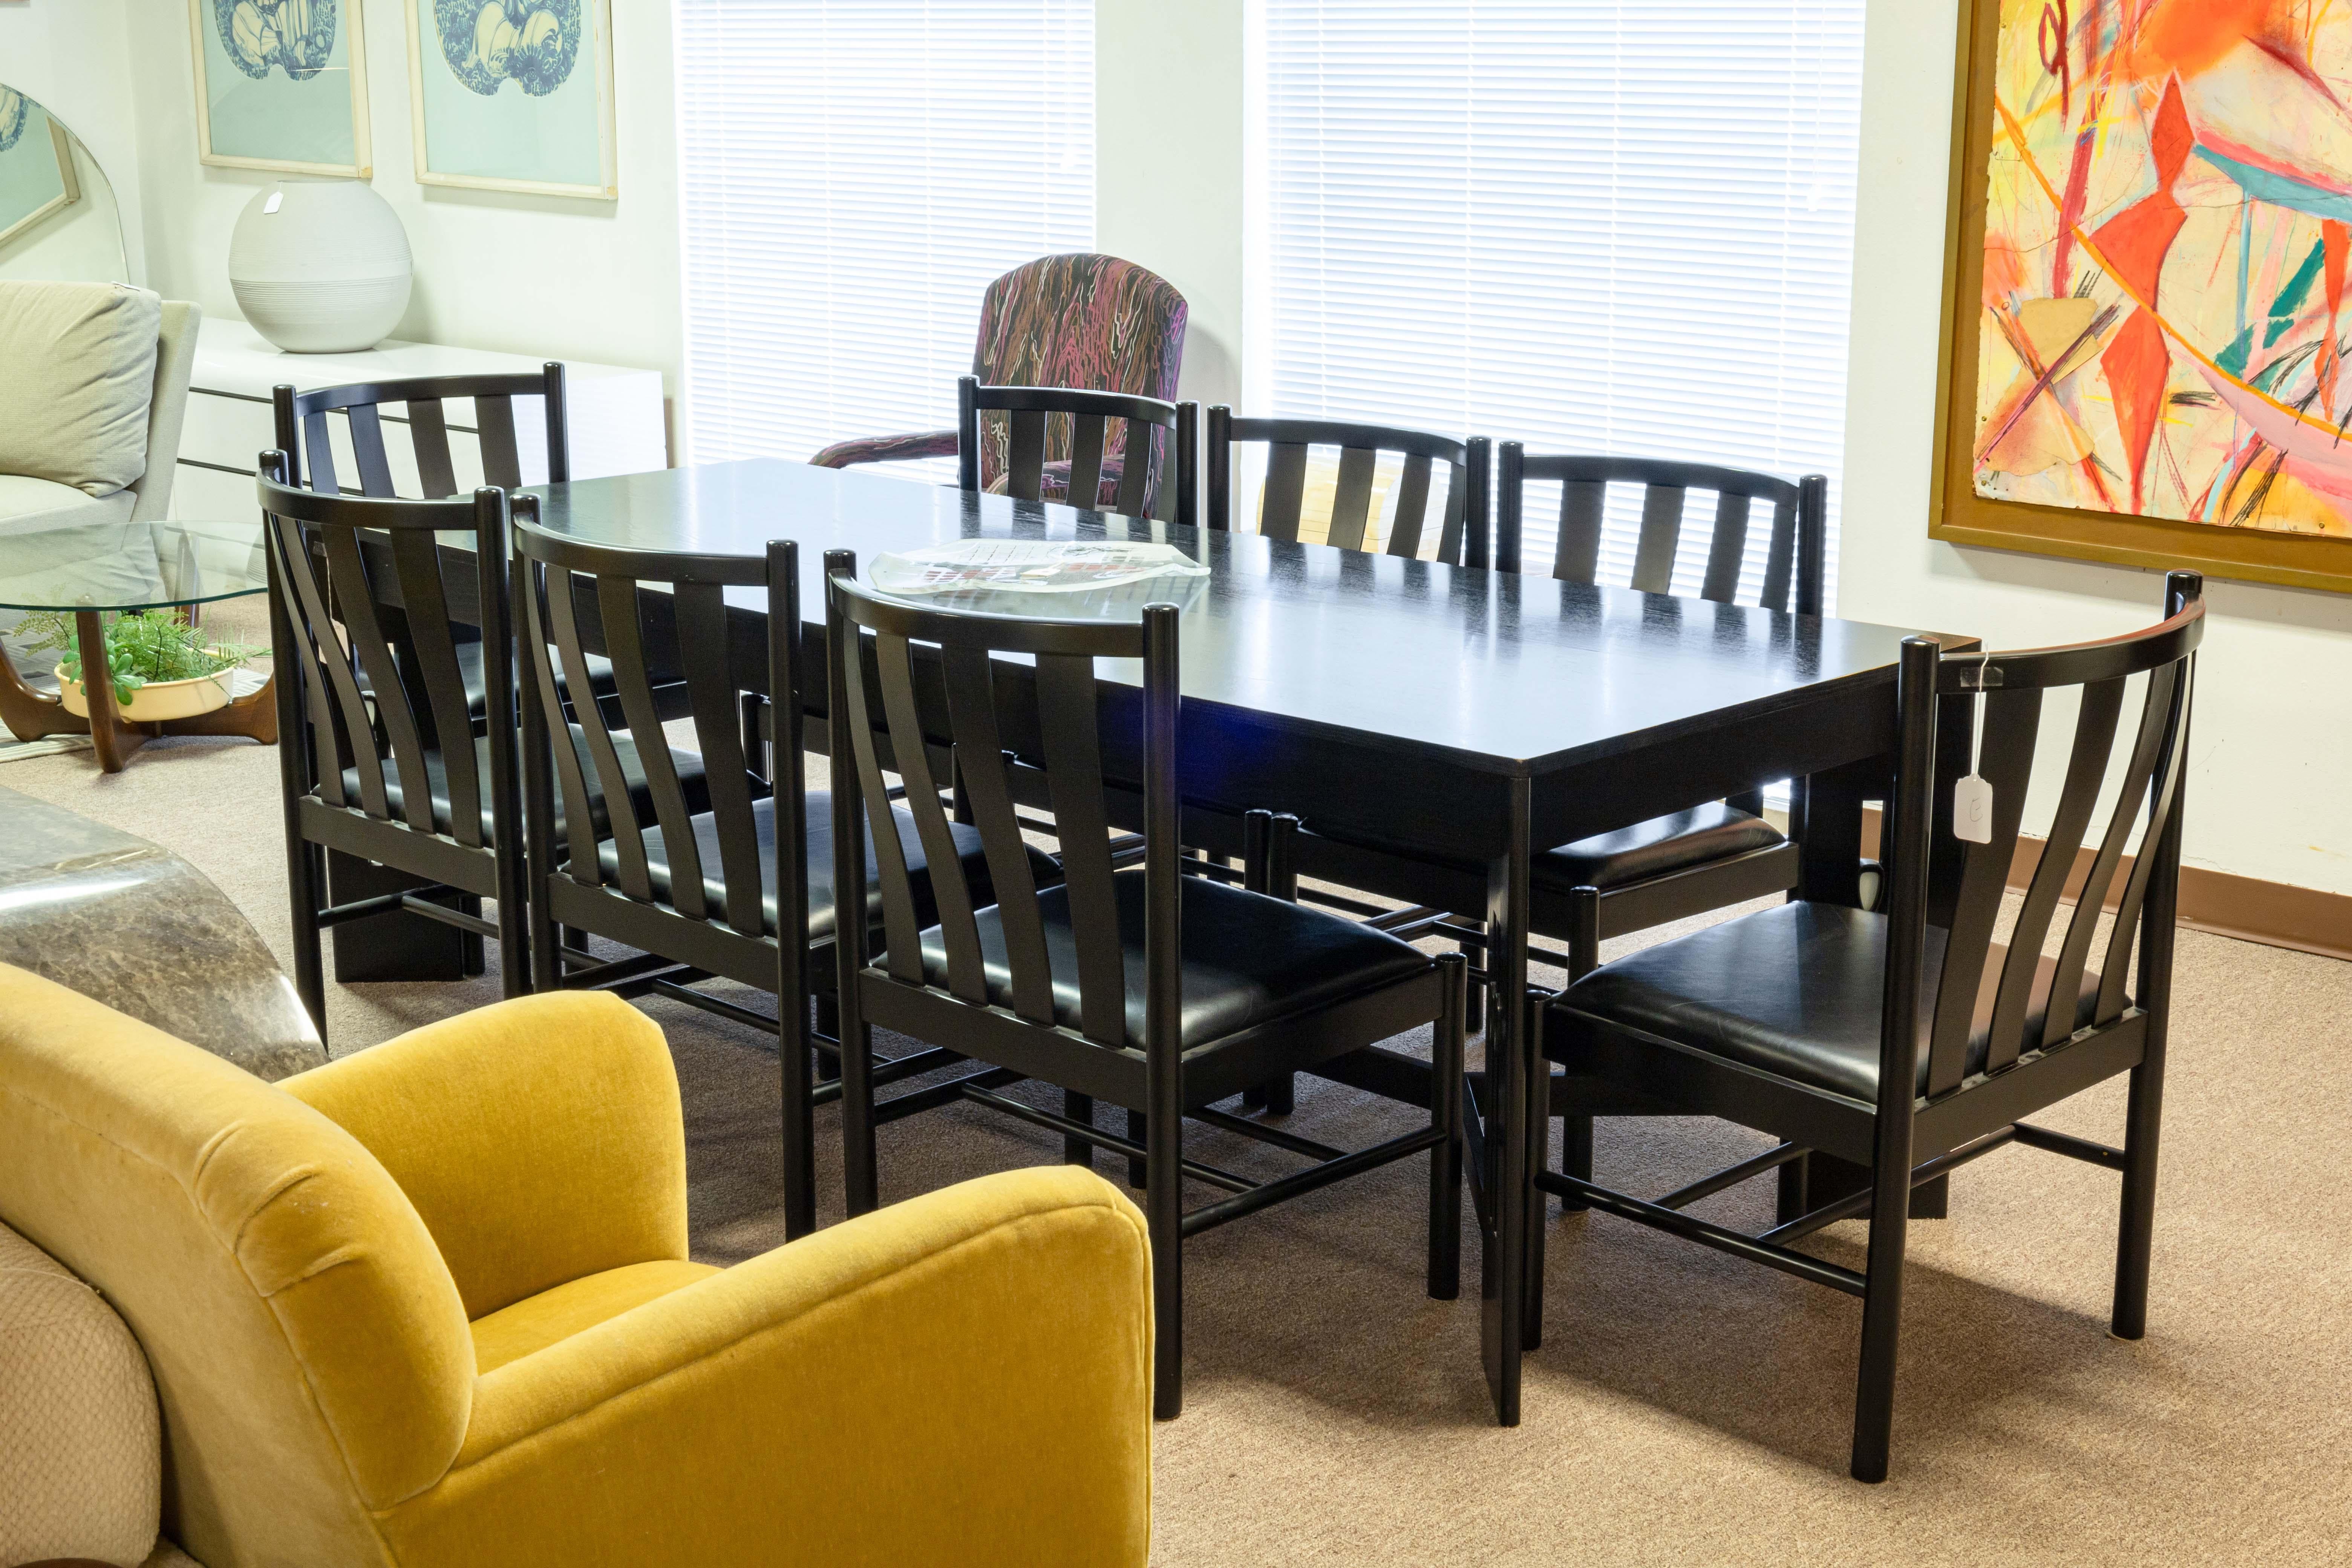 Ensemble de 8 chaises de salle à manger à lattes laquées noires Collaudo pour Stendig. Un bel ensemble de chaises de salle à manger noires au design très épuré. Ces jolies chaises italiennes sont construites en bois avec une finition laquée noire,